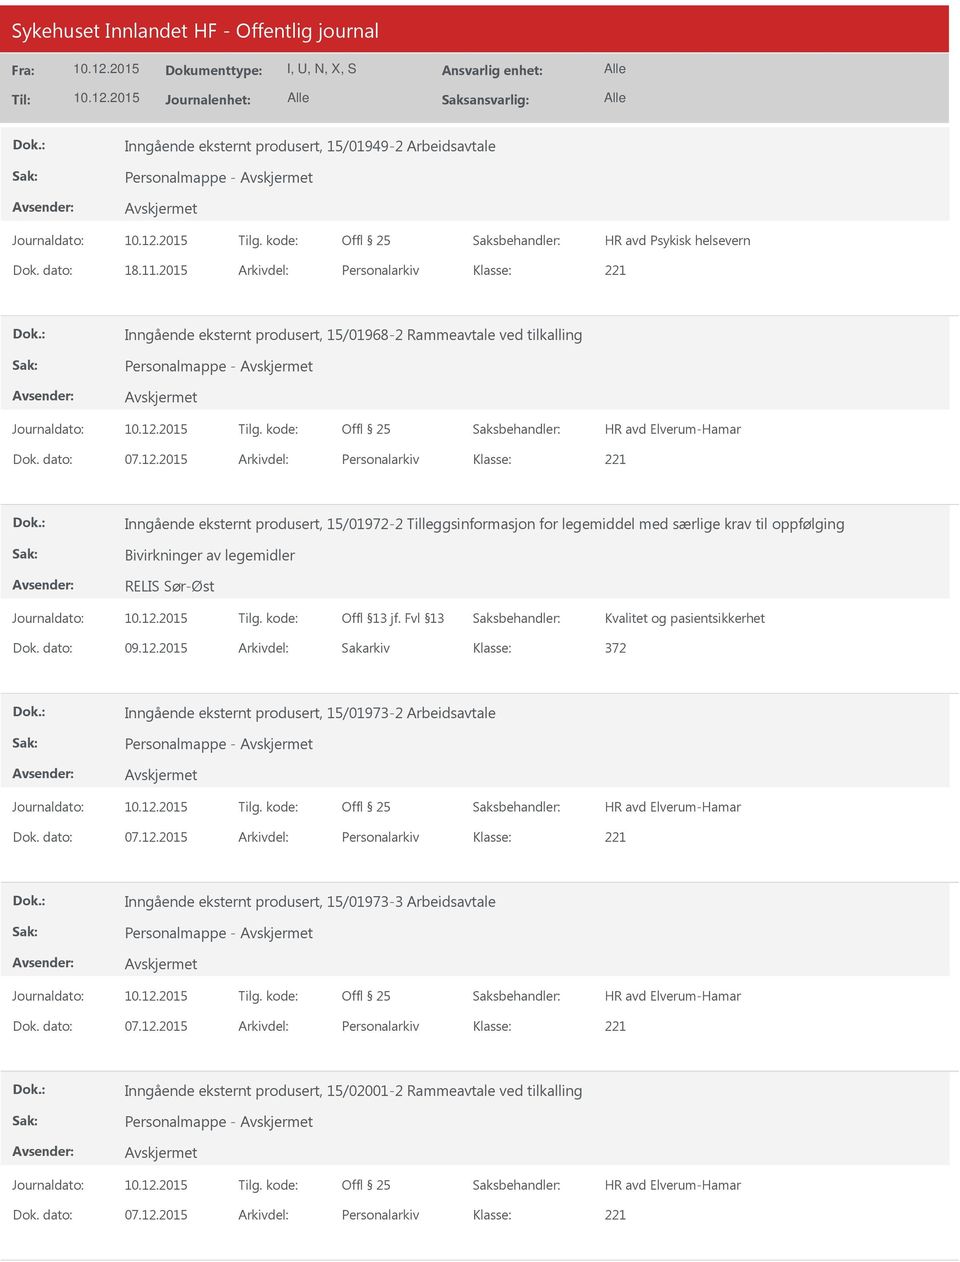 2015 Arkivdel: Personalarkiv Inngående eksternt produsert, 15/01972-2 Tilleggsinformasjon for legemiddel med særlige krav til oppfølging Bivirkninger av legemidler RELIS Sør-Øst